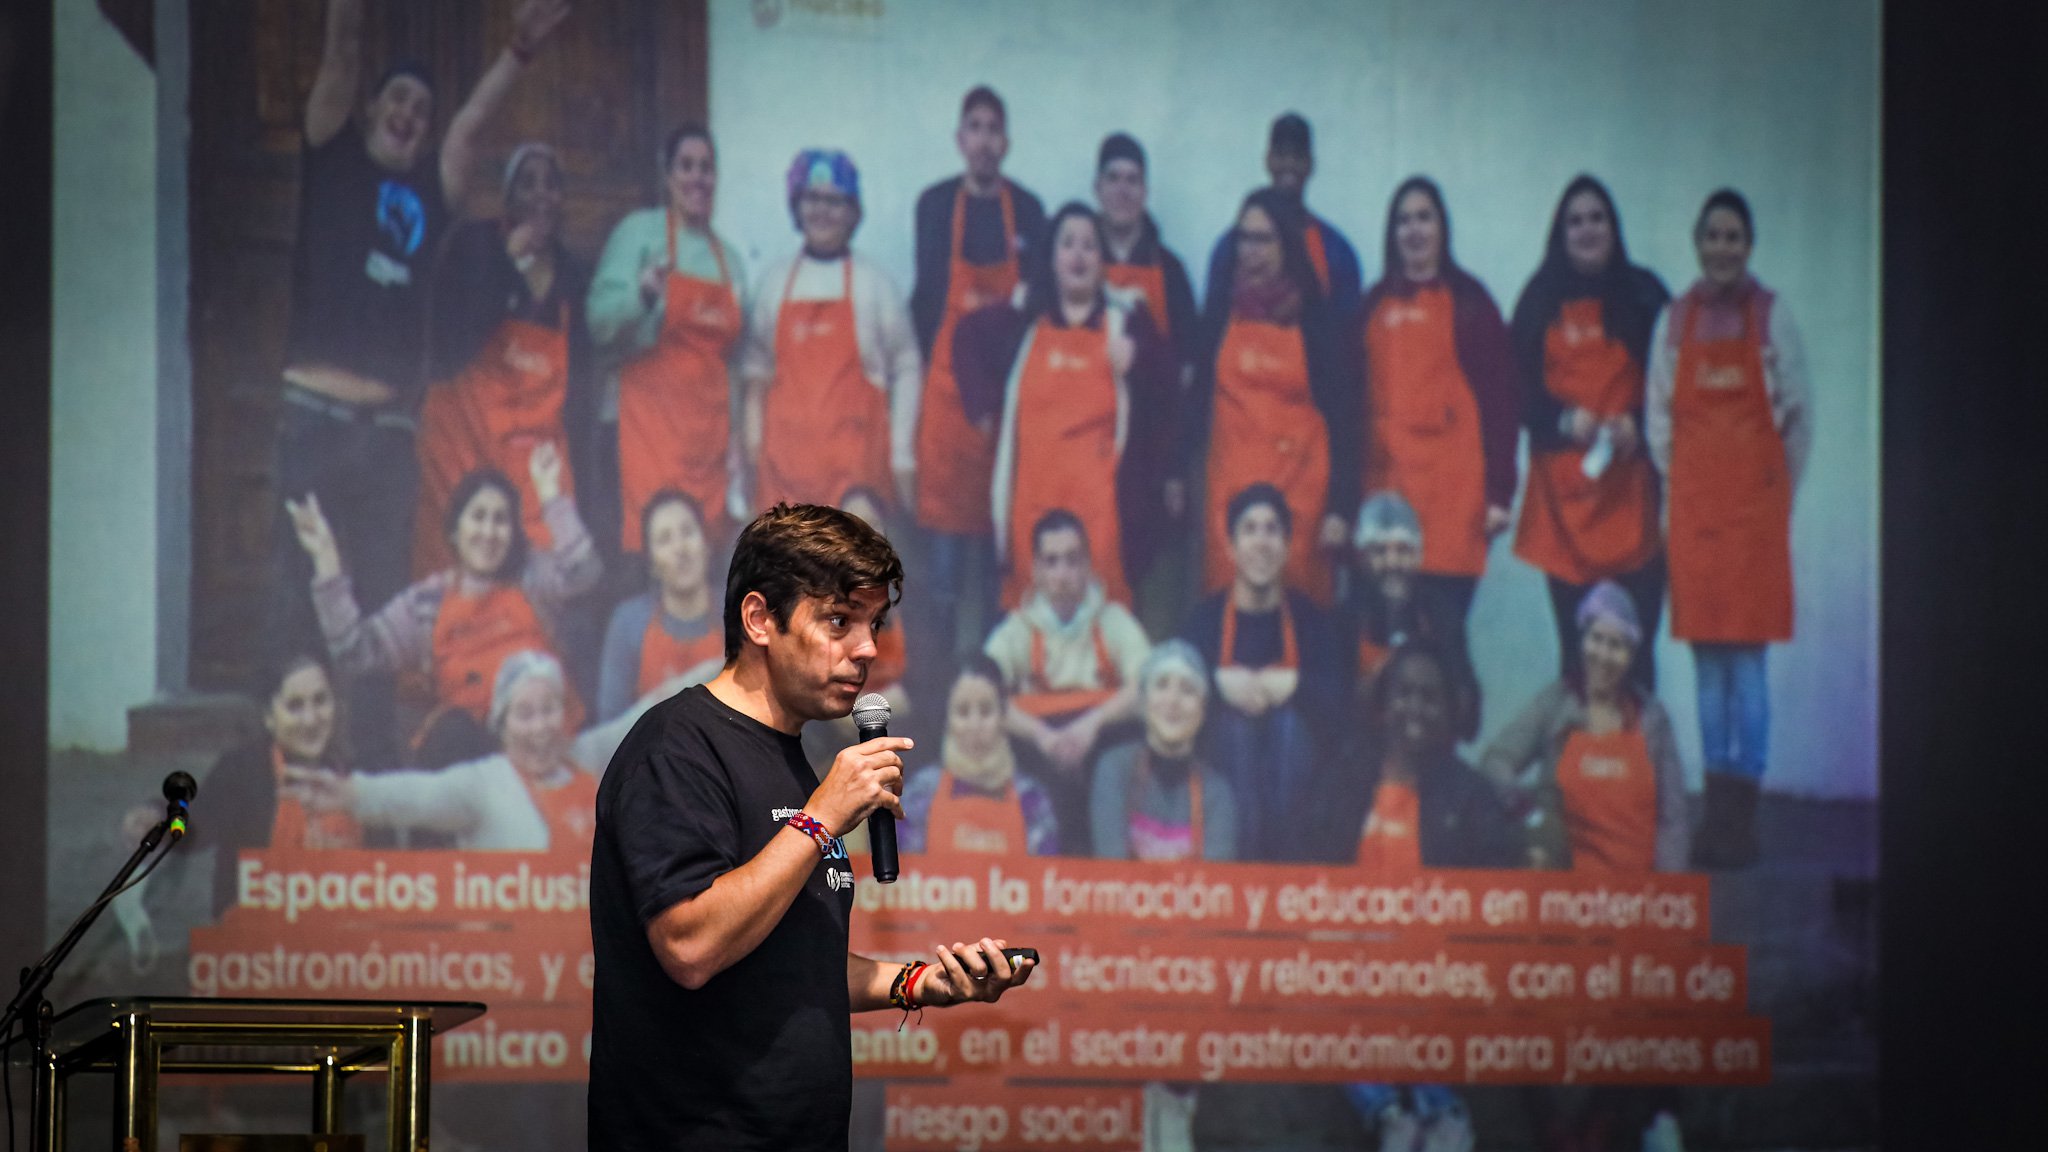 Charla Magistral "Cambiemos el Mundo Comiendo" de Rafael Rincón en El Salvador